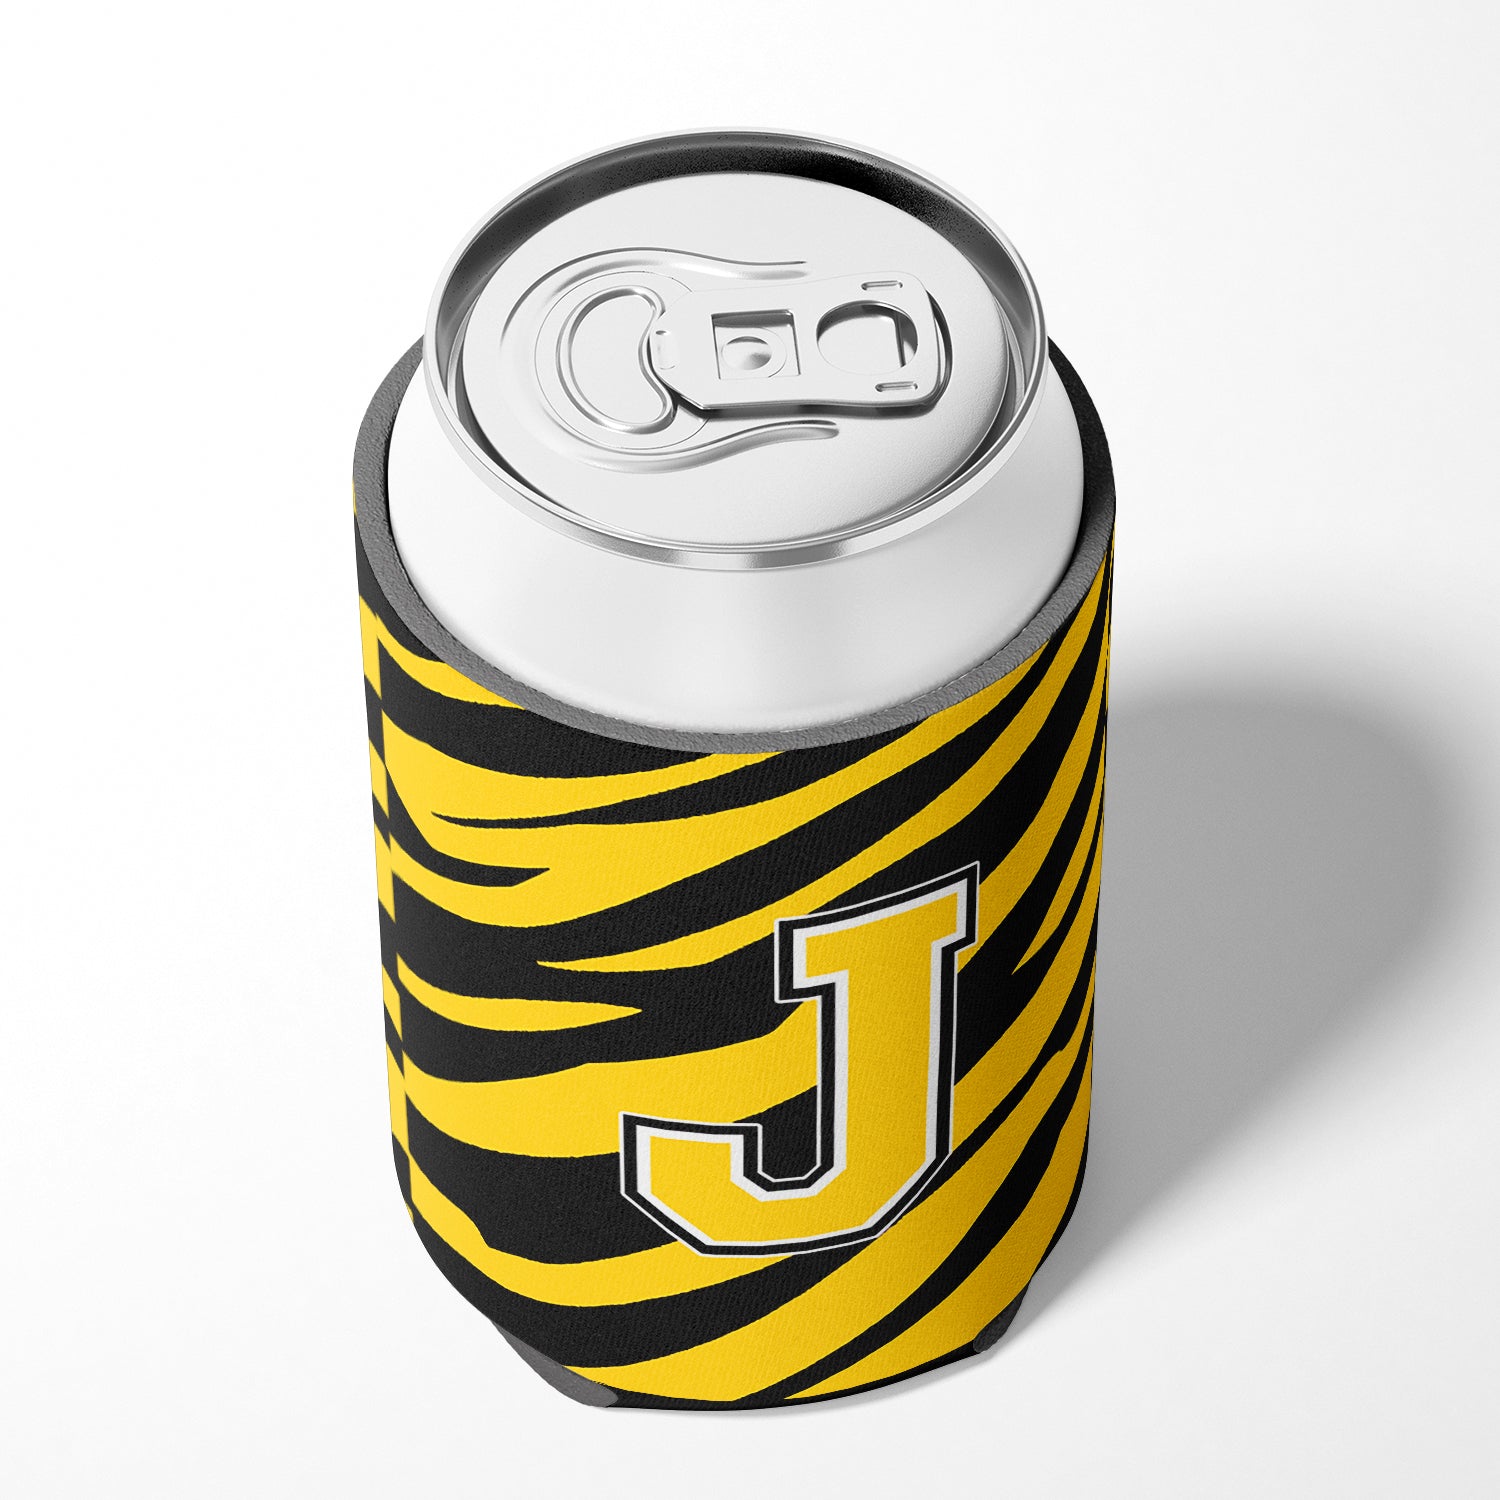 Letter J Initial Monogram - Tiger Stripe - Black Gold Can Beverage Insulator Hugger